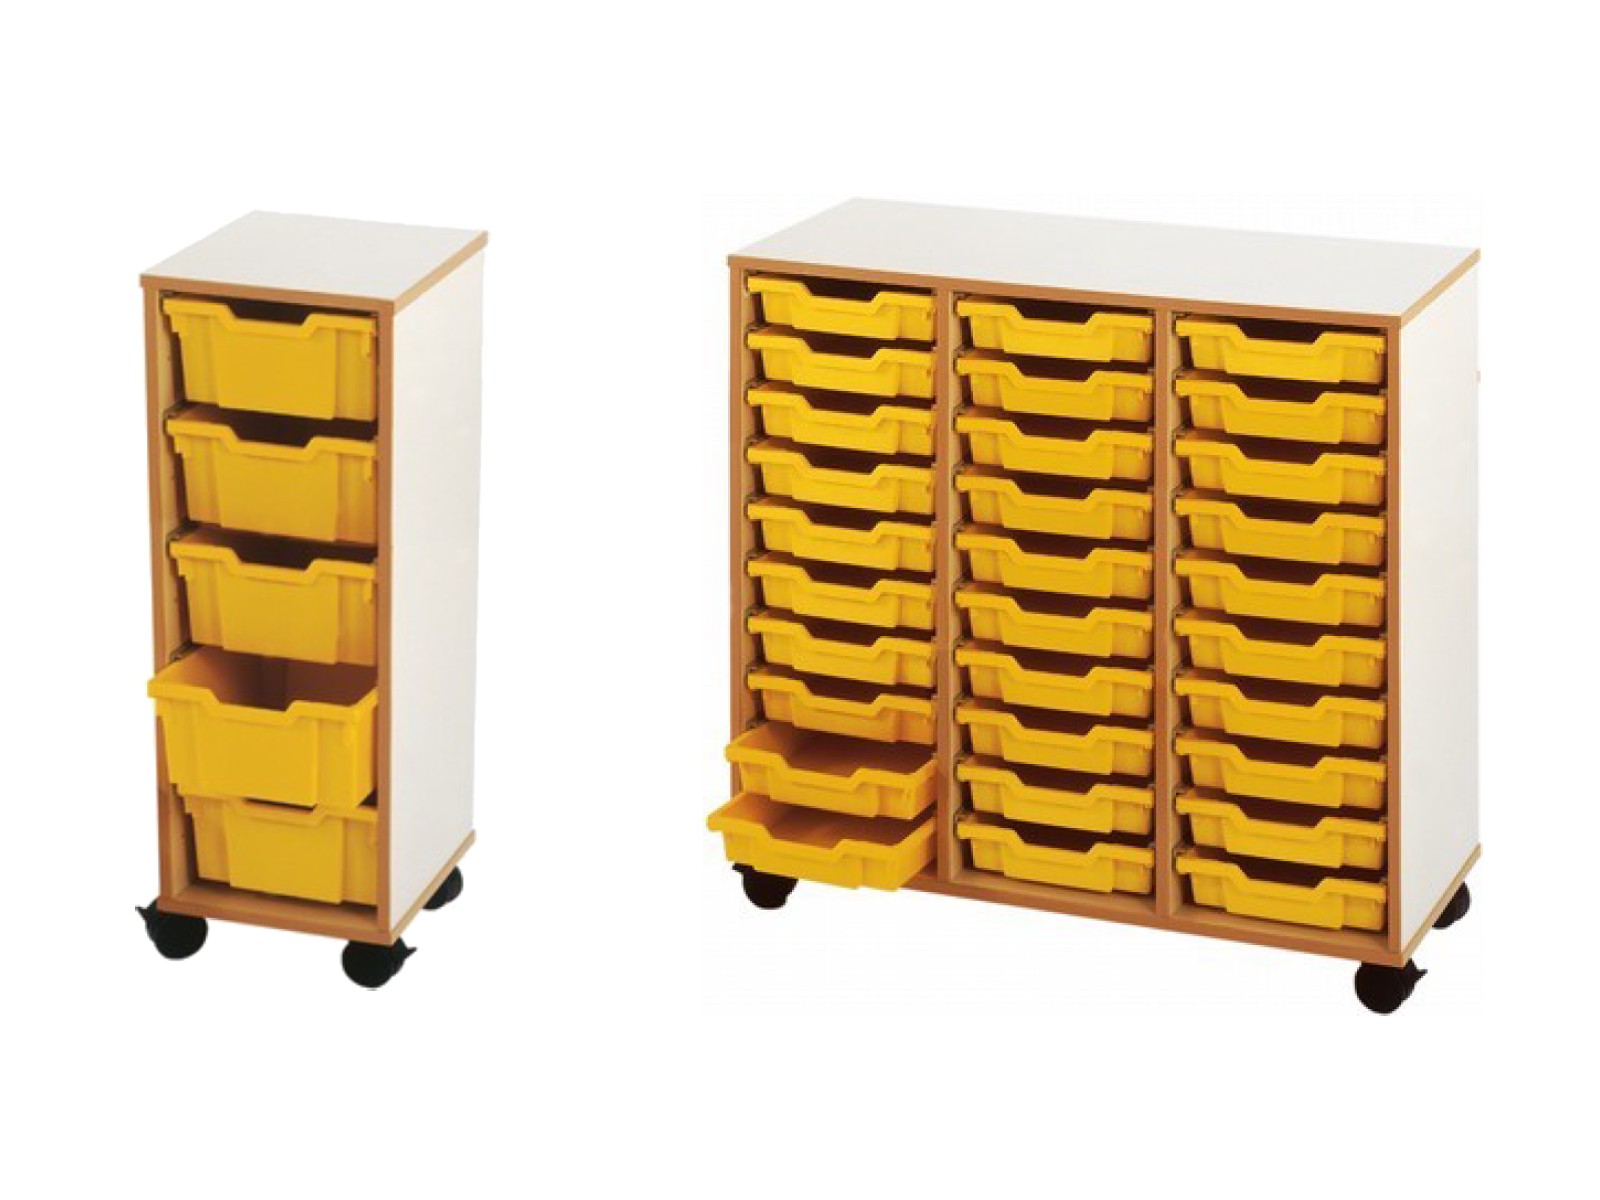 Meubles à colonnes pour classe de maternelle, meuble modulable à composer en fonction de vos besoins